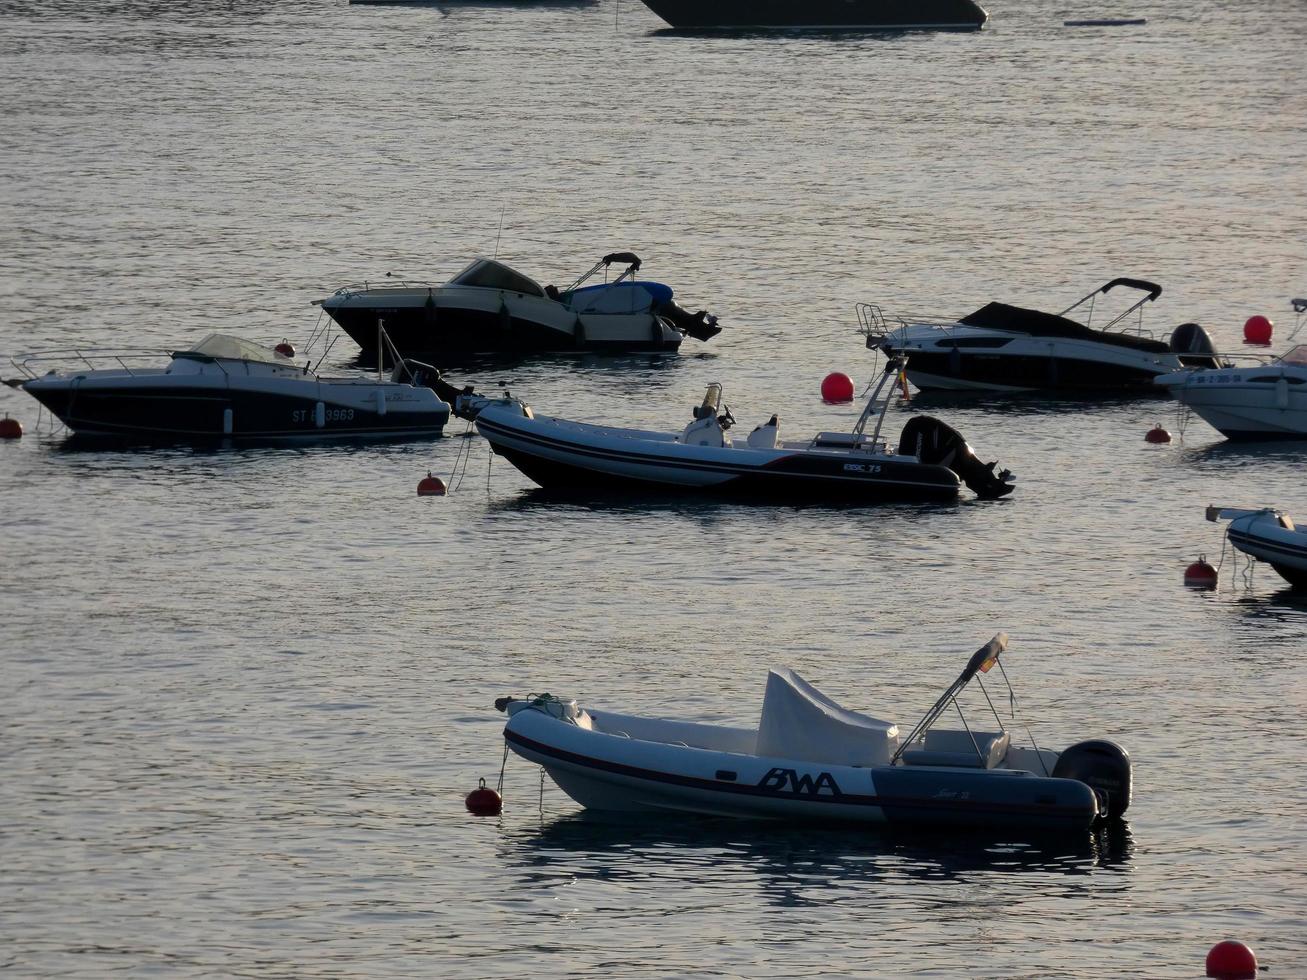 pequeñas embarcaciones de recreo y deportivas fondeadas en medio de la bahía de la costa brava catalana. foto